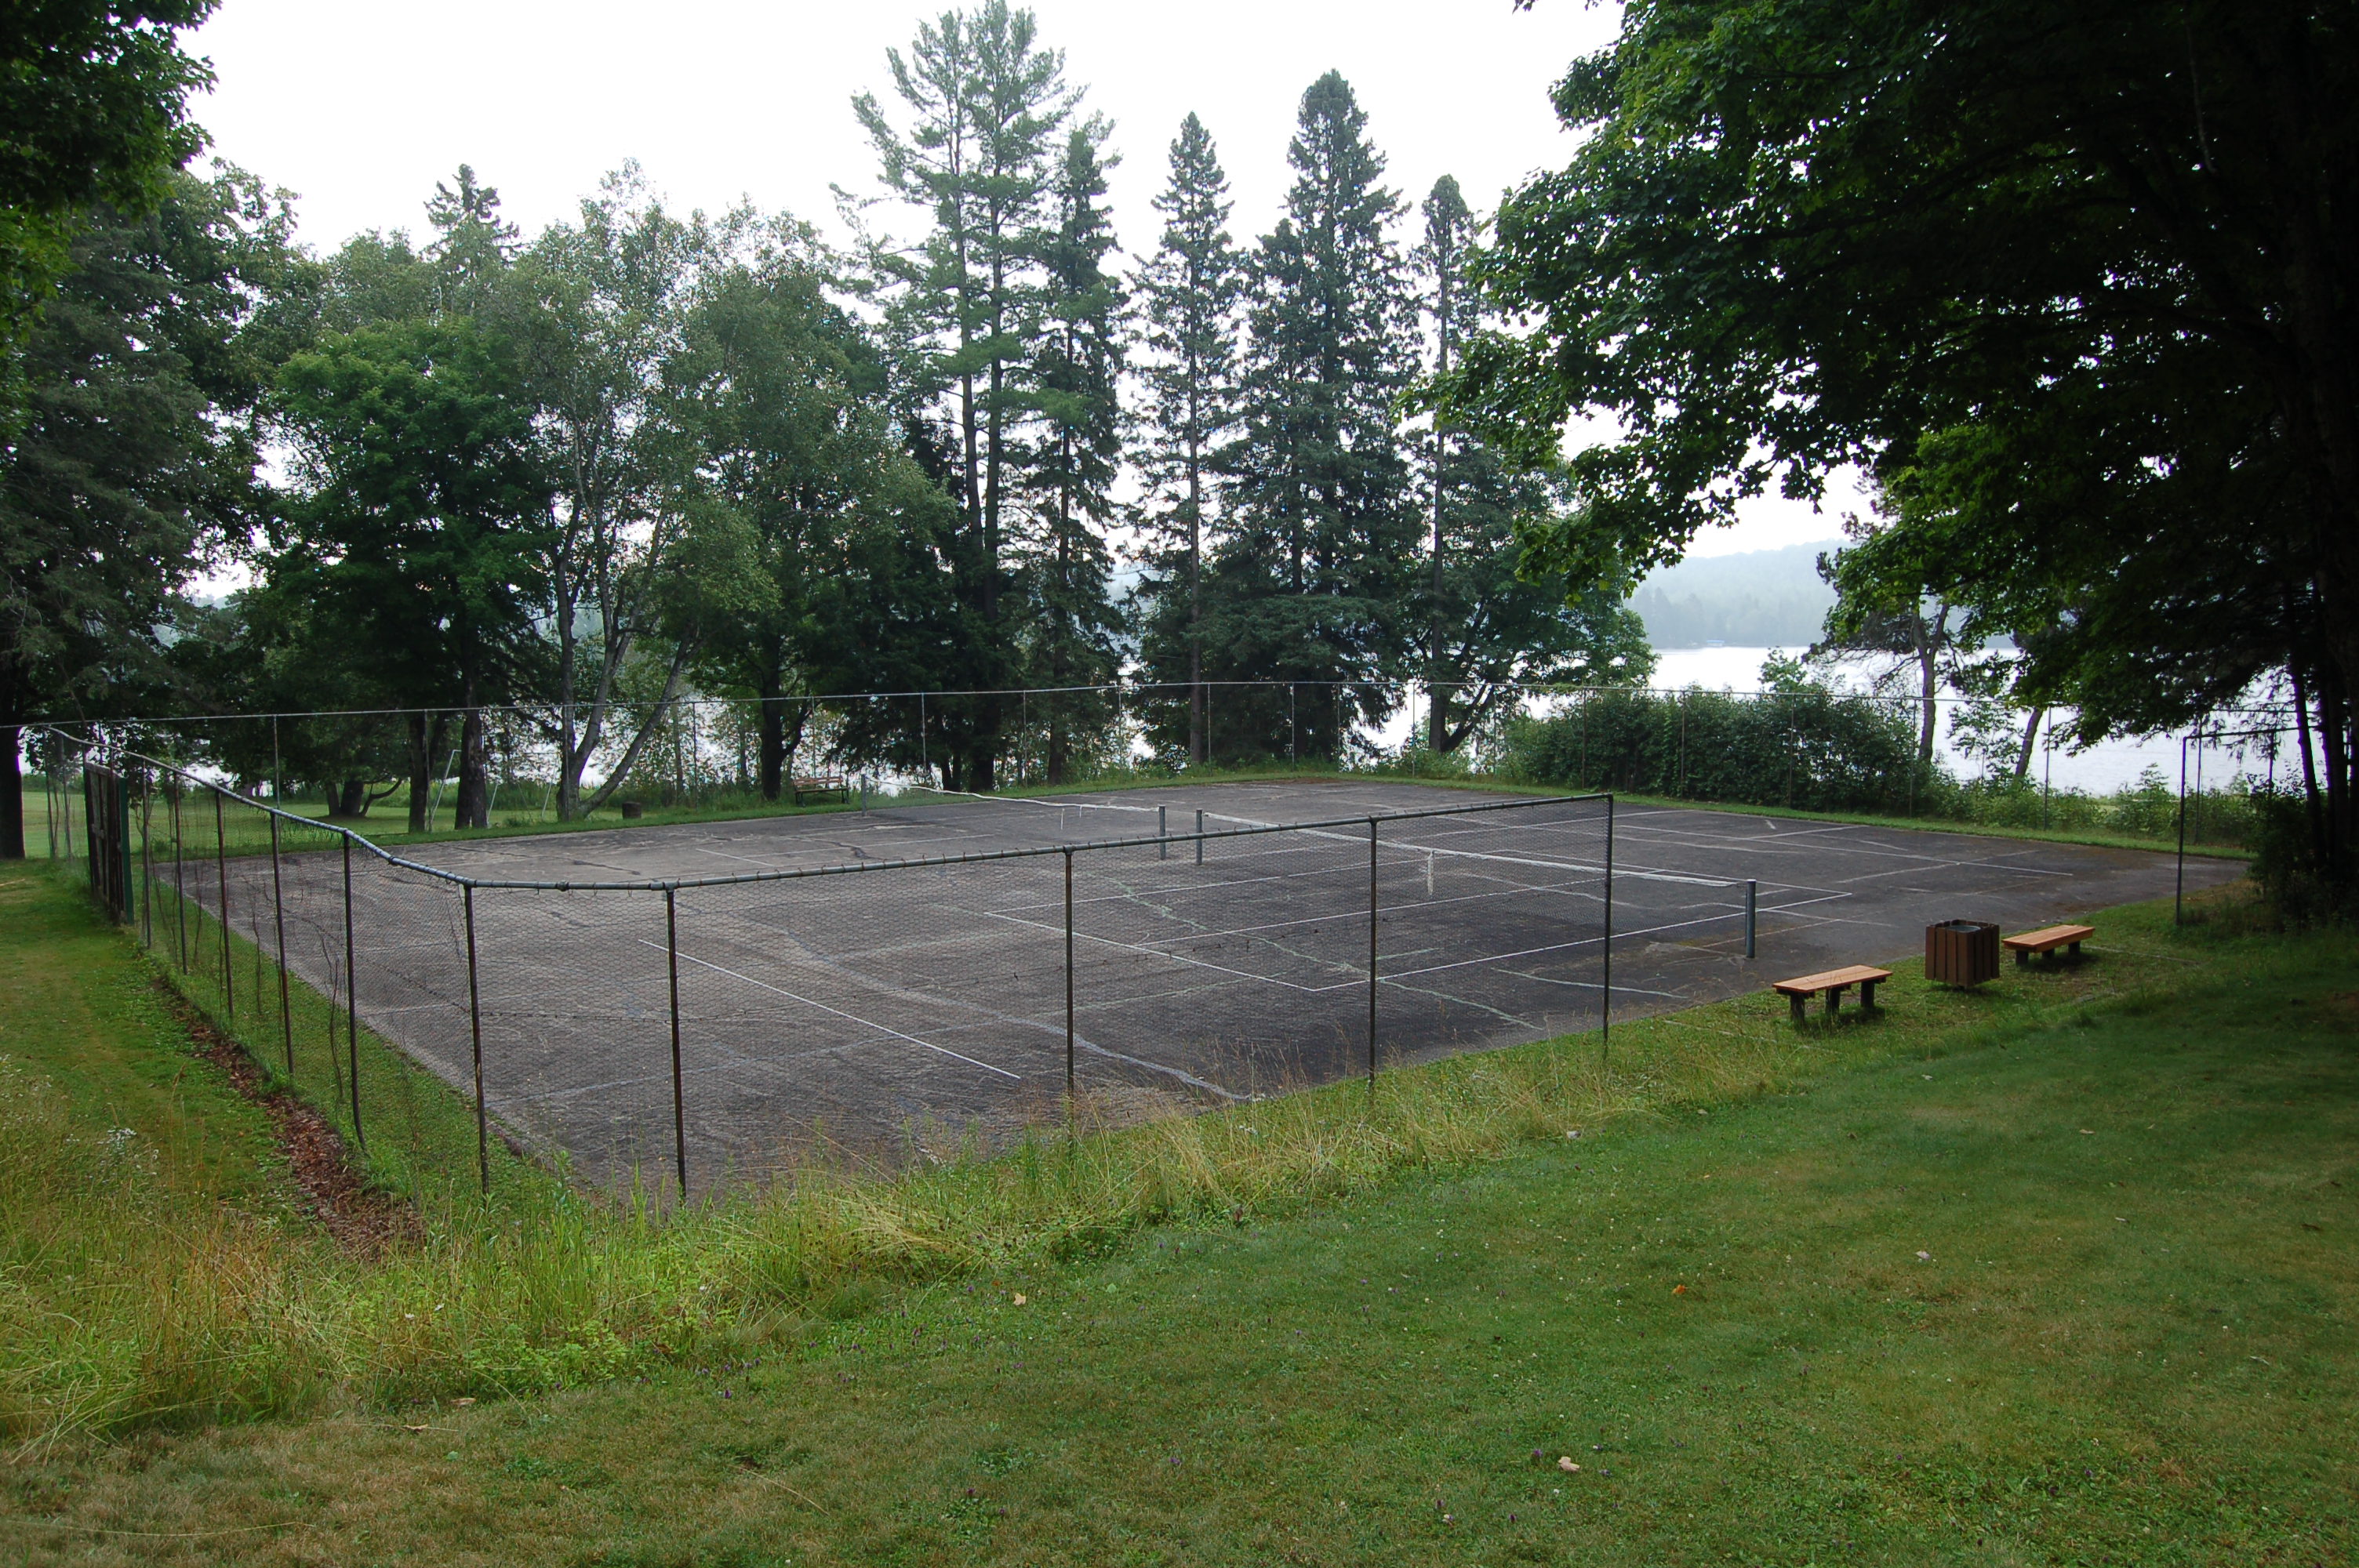 Bewabic State Park Tennis Court Michigan